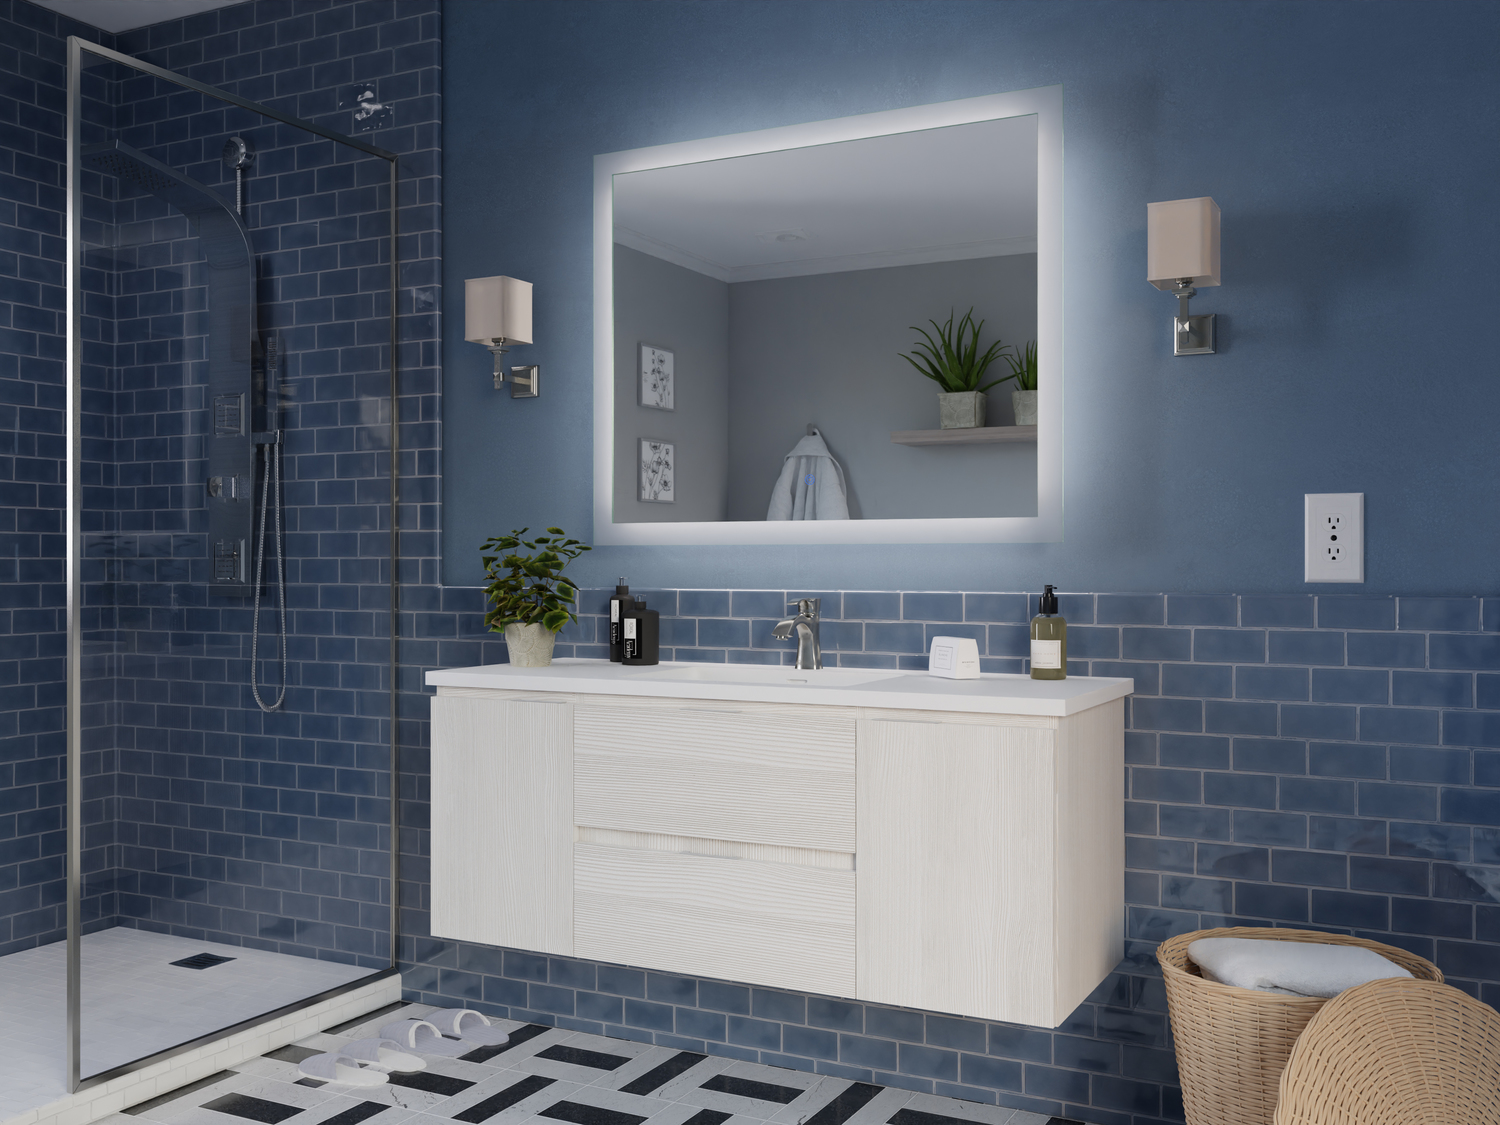 60 inch bathroom vanity with sink Anzzi BATHROOM - Vanities - Vanity Sets White